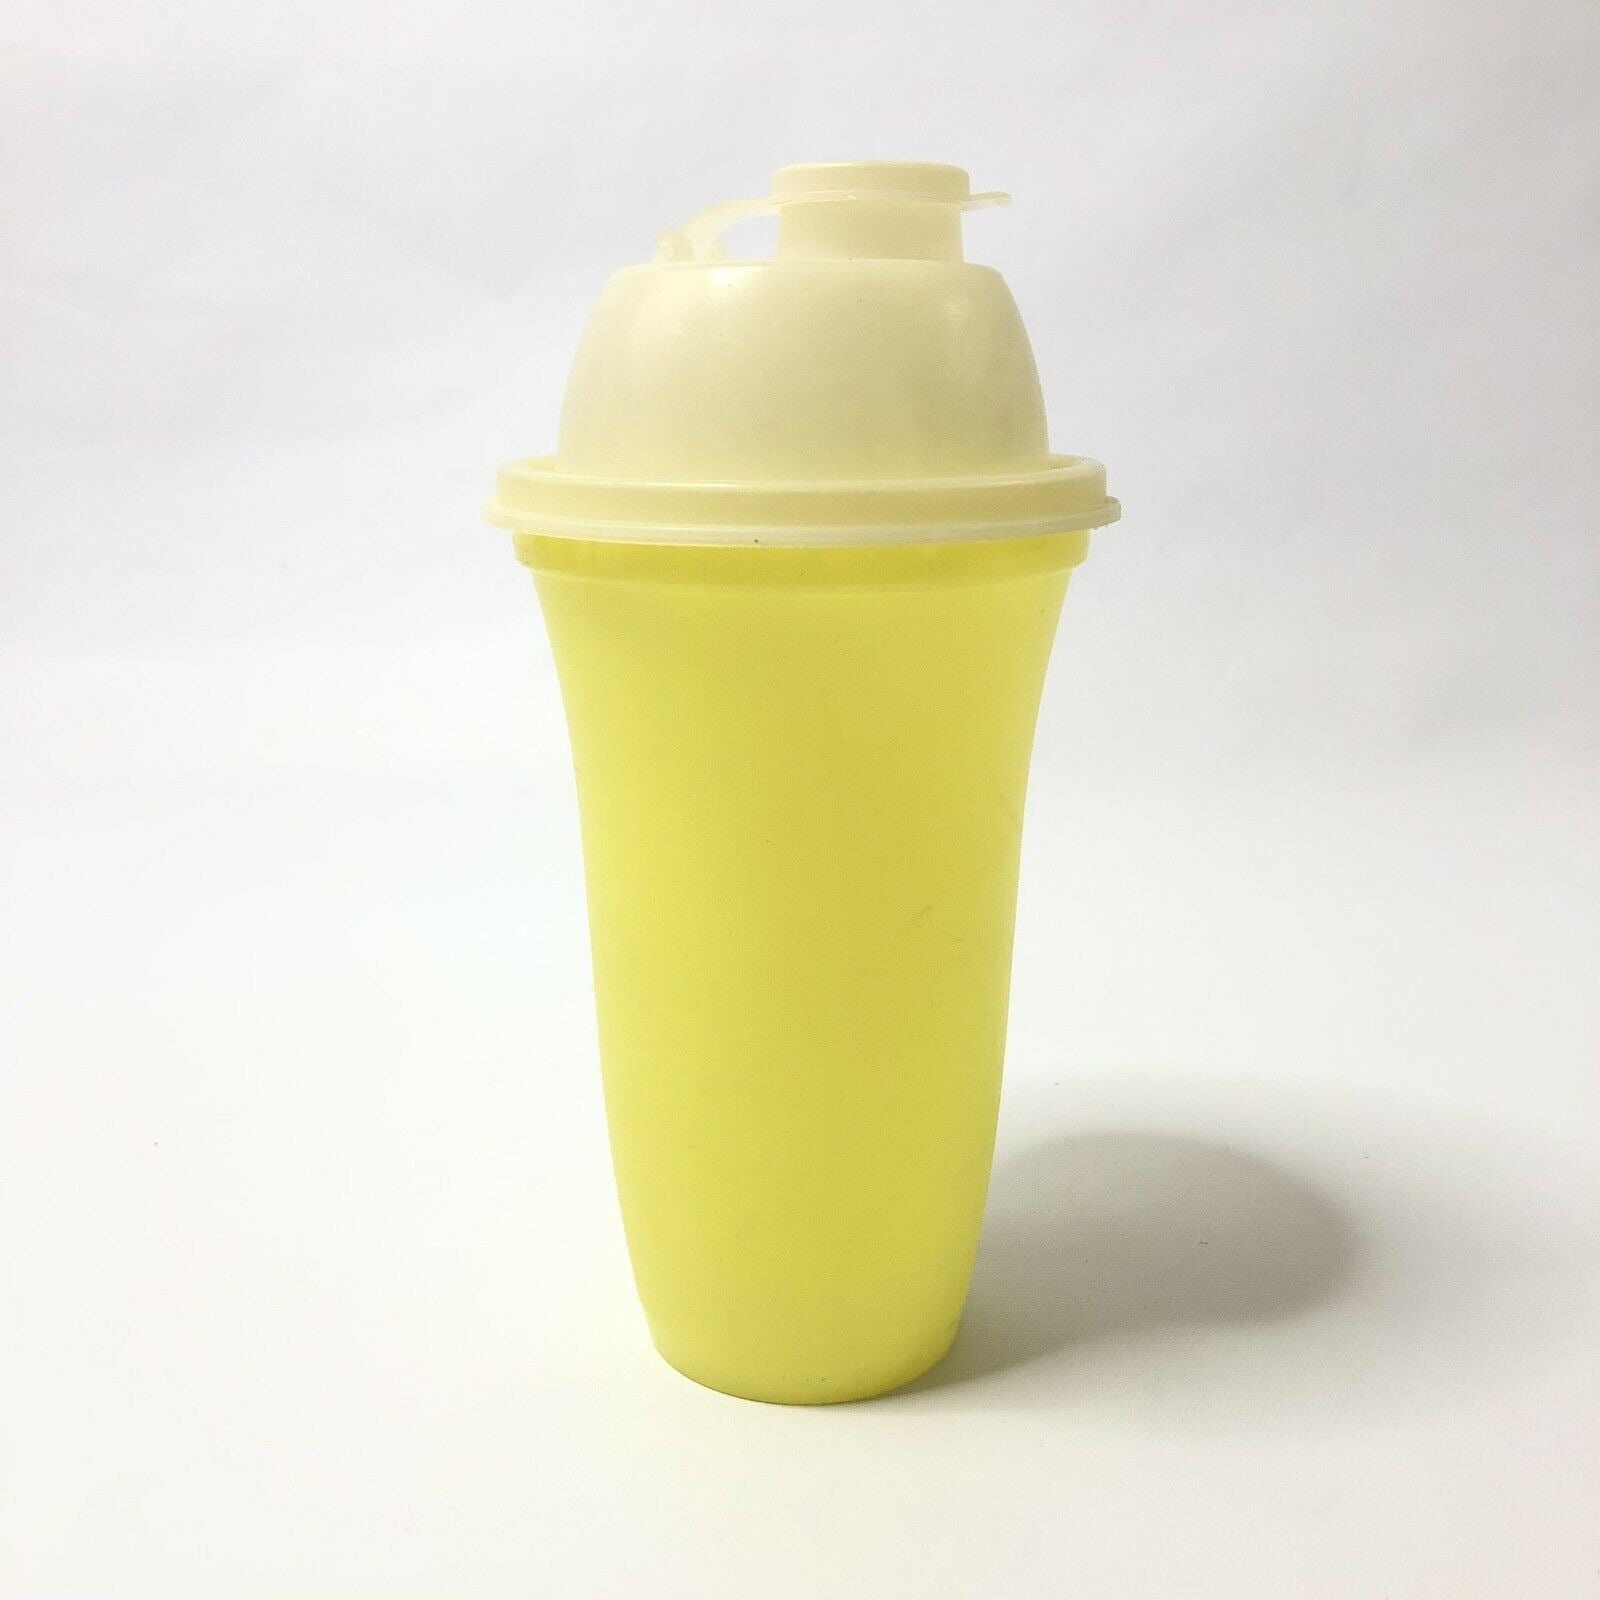 16 Oz. Plastic Shaker Bottle - ASHB02 - IdeaStage Promotional Products